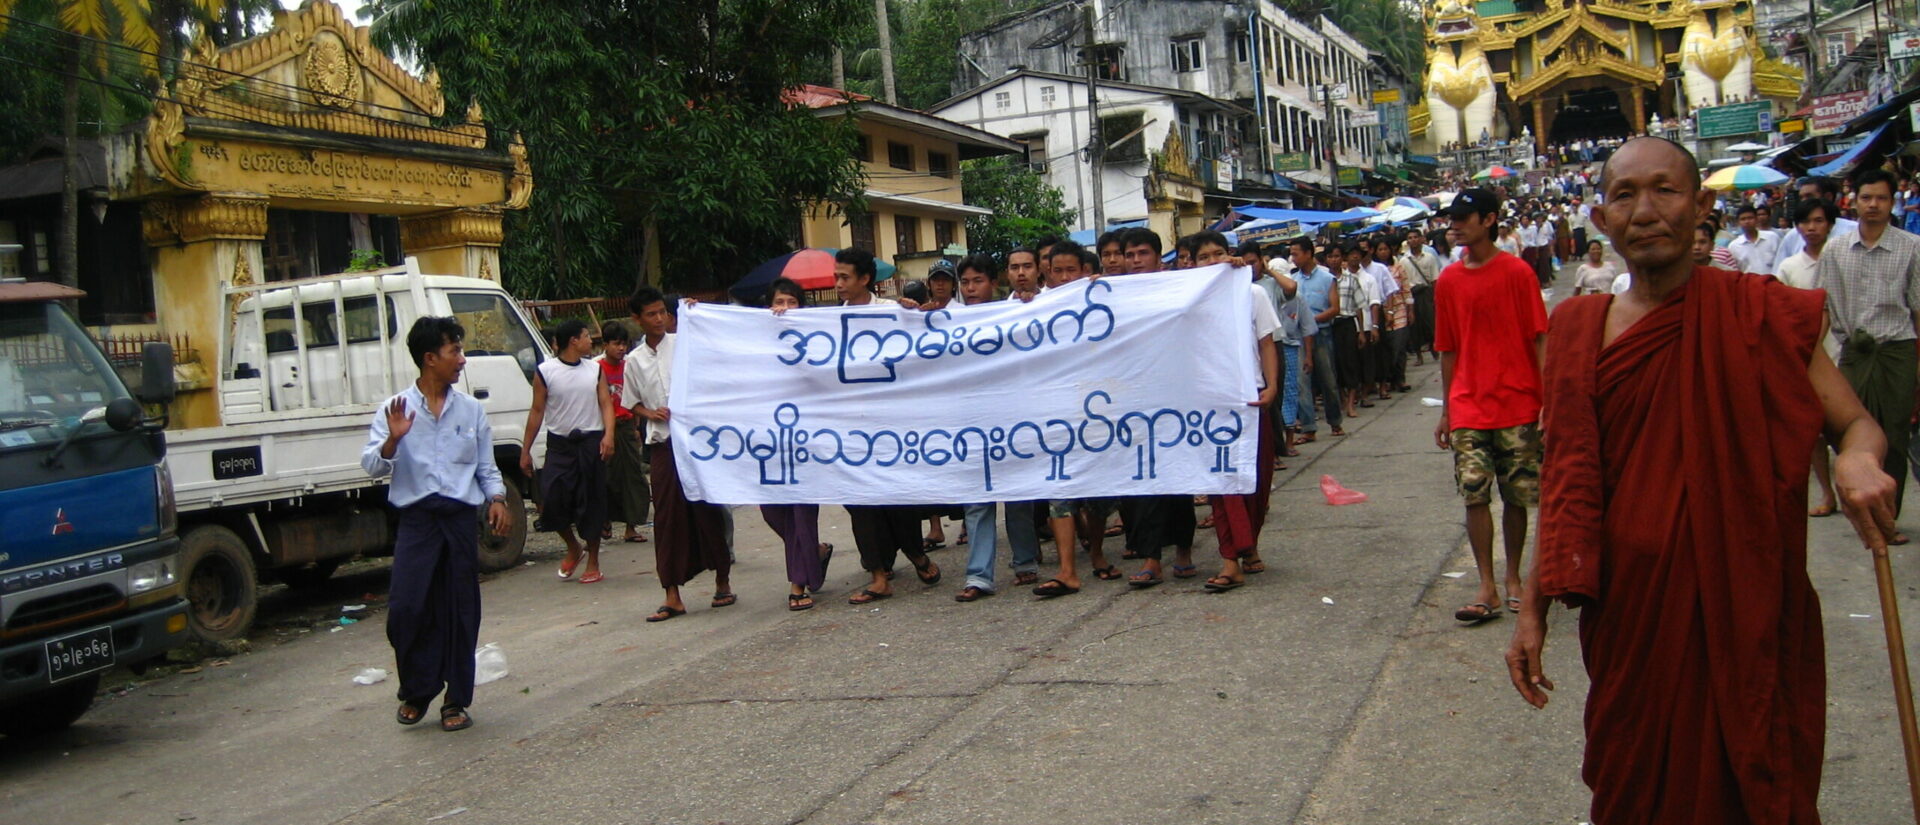 En 2007, les moines bouddhistes de Birmanie ont emmené la "révolution safran" | © 